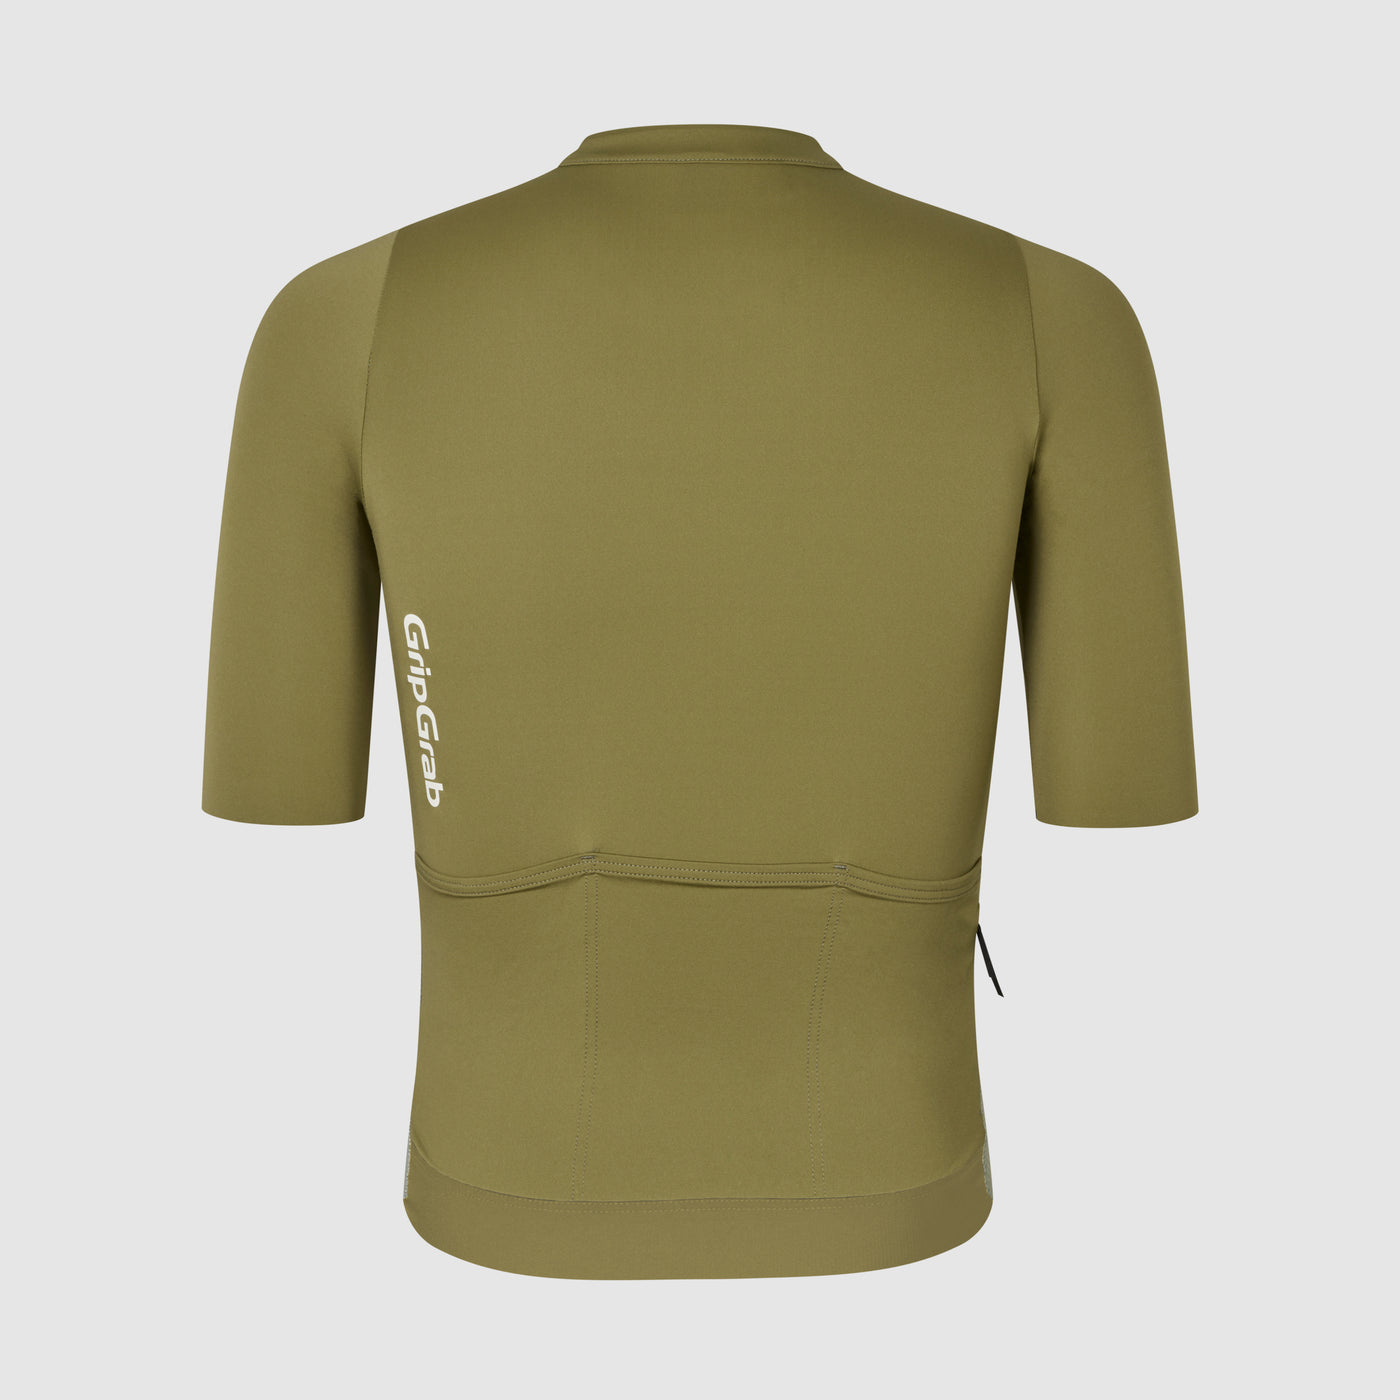 Airflow Lightweight Short Sleeve Jersey